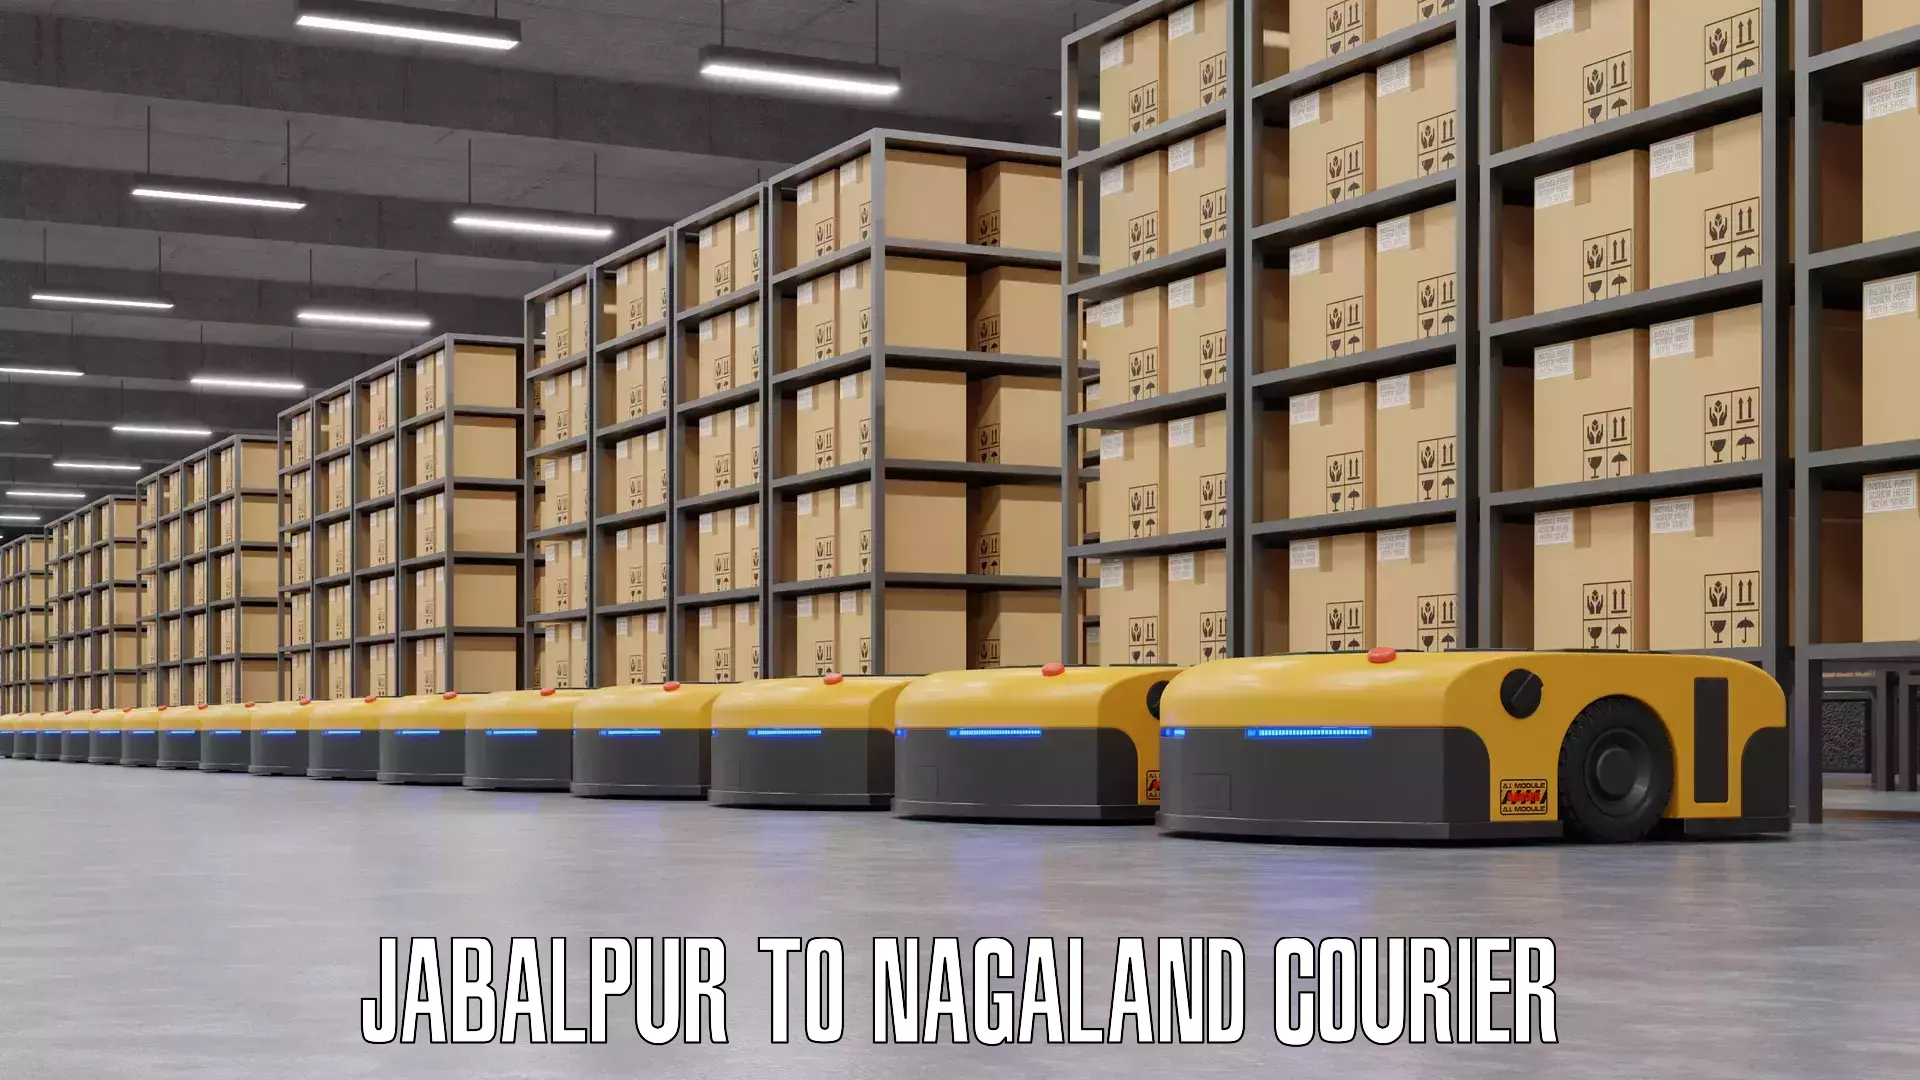 Luggage shipping specialists Jabalpur to Nagaland